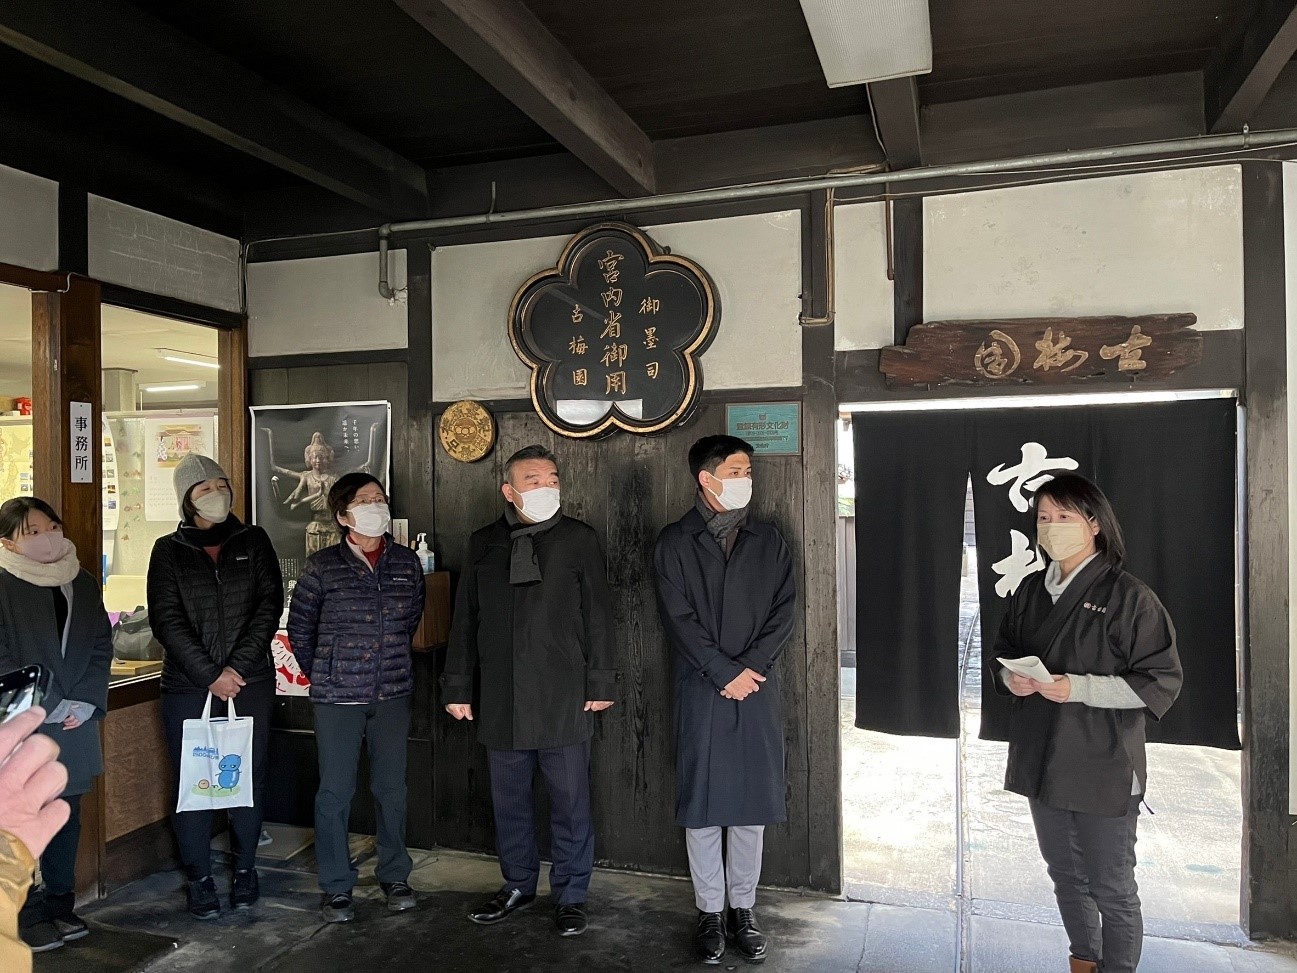 「奈良墨の歴史が紡いだ多彩な書の文化を学ぶ旅② ならまち・興福寺編」モニターツアーを行いました。